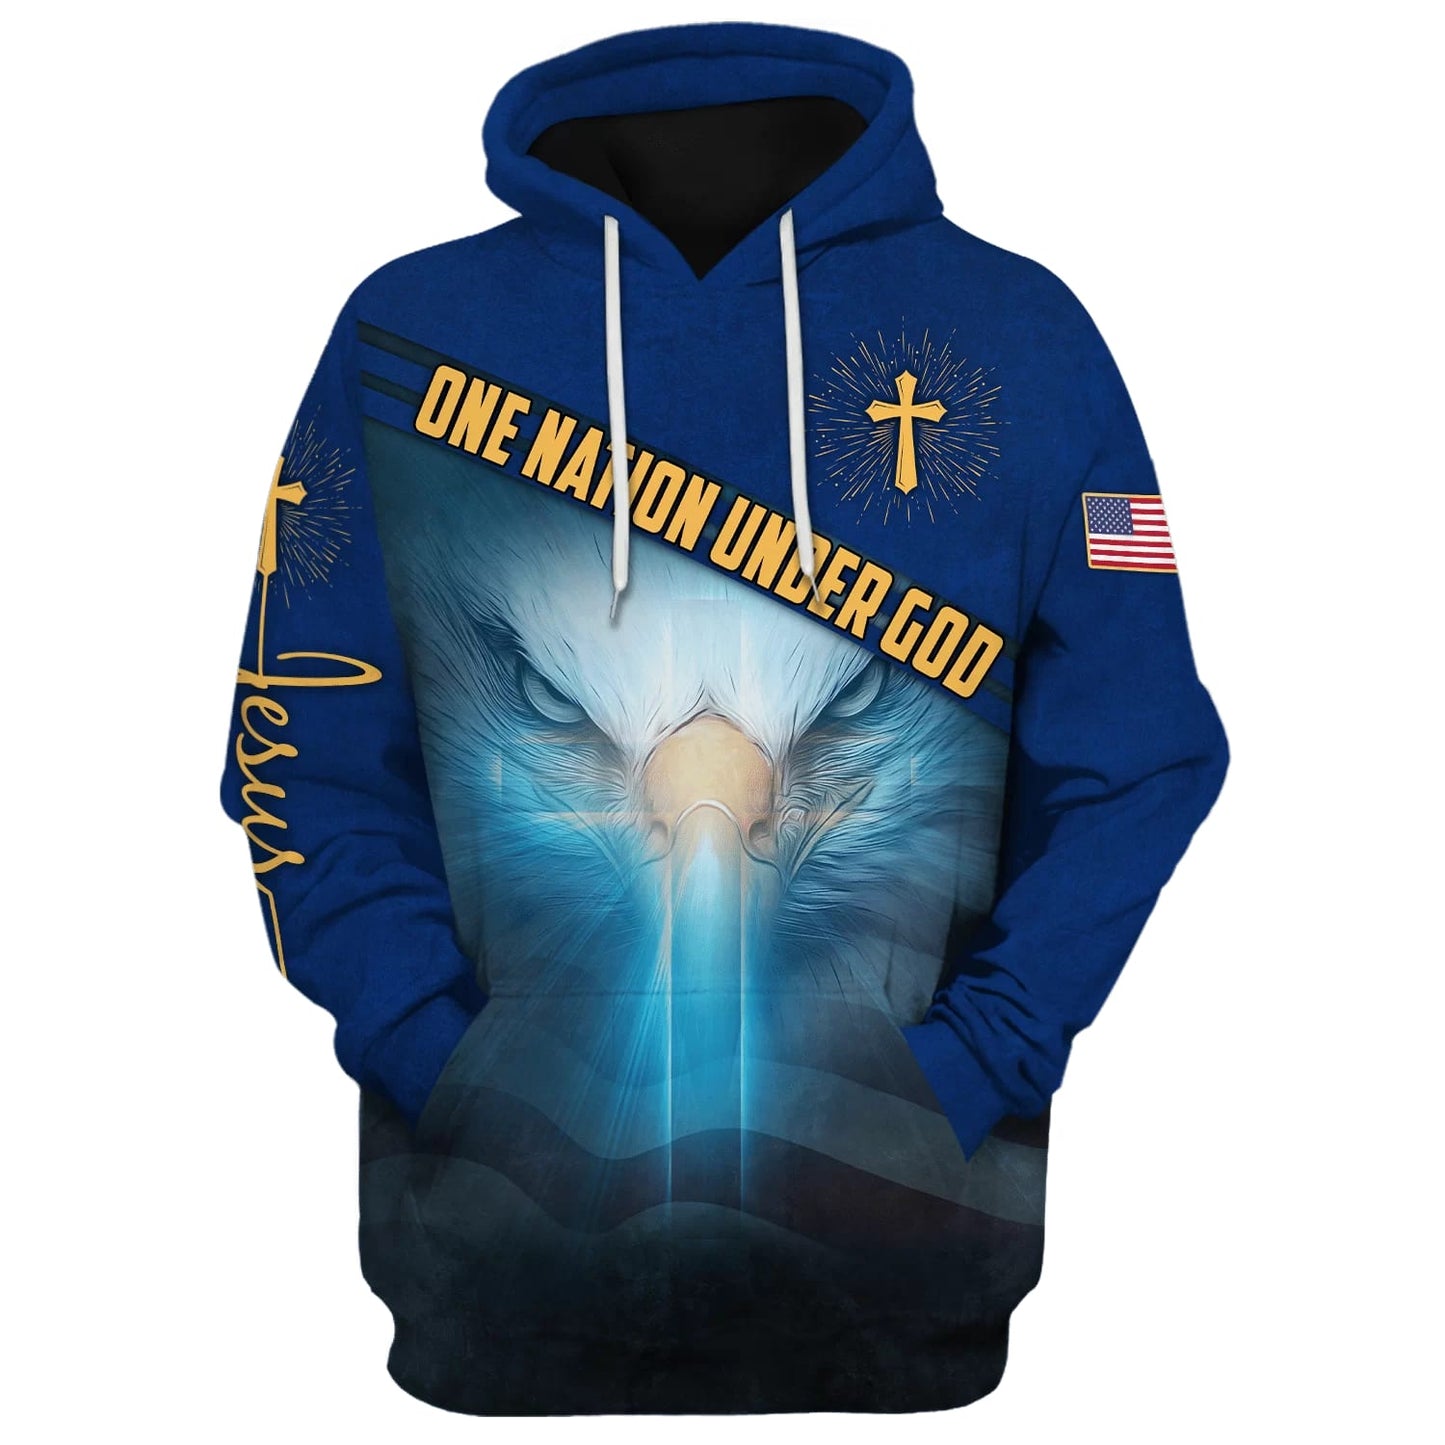 One Nation Under God American Eagle Hoodies - Men & Women Christian Hoodie - 3D Printed Hoodie